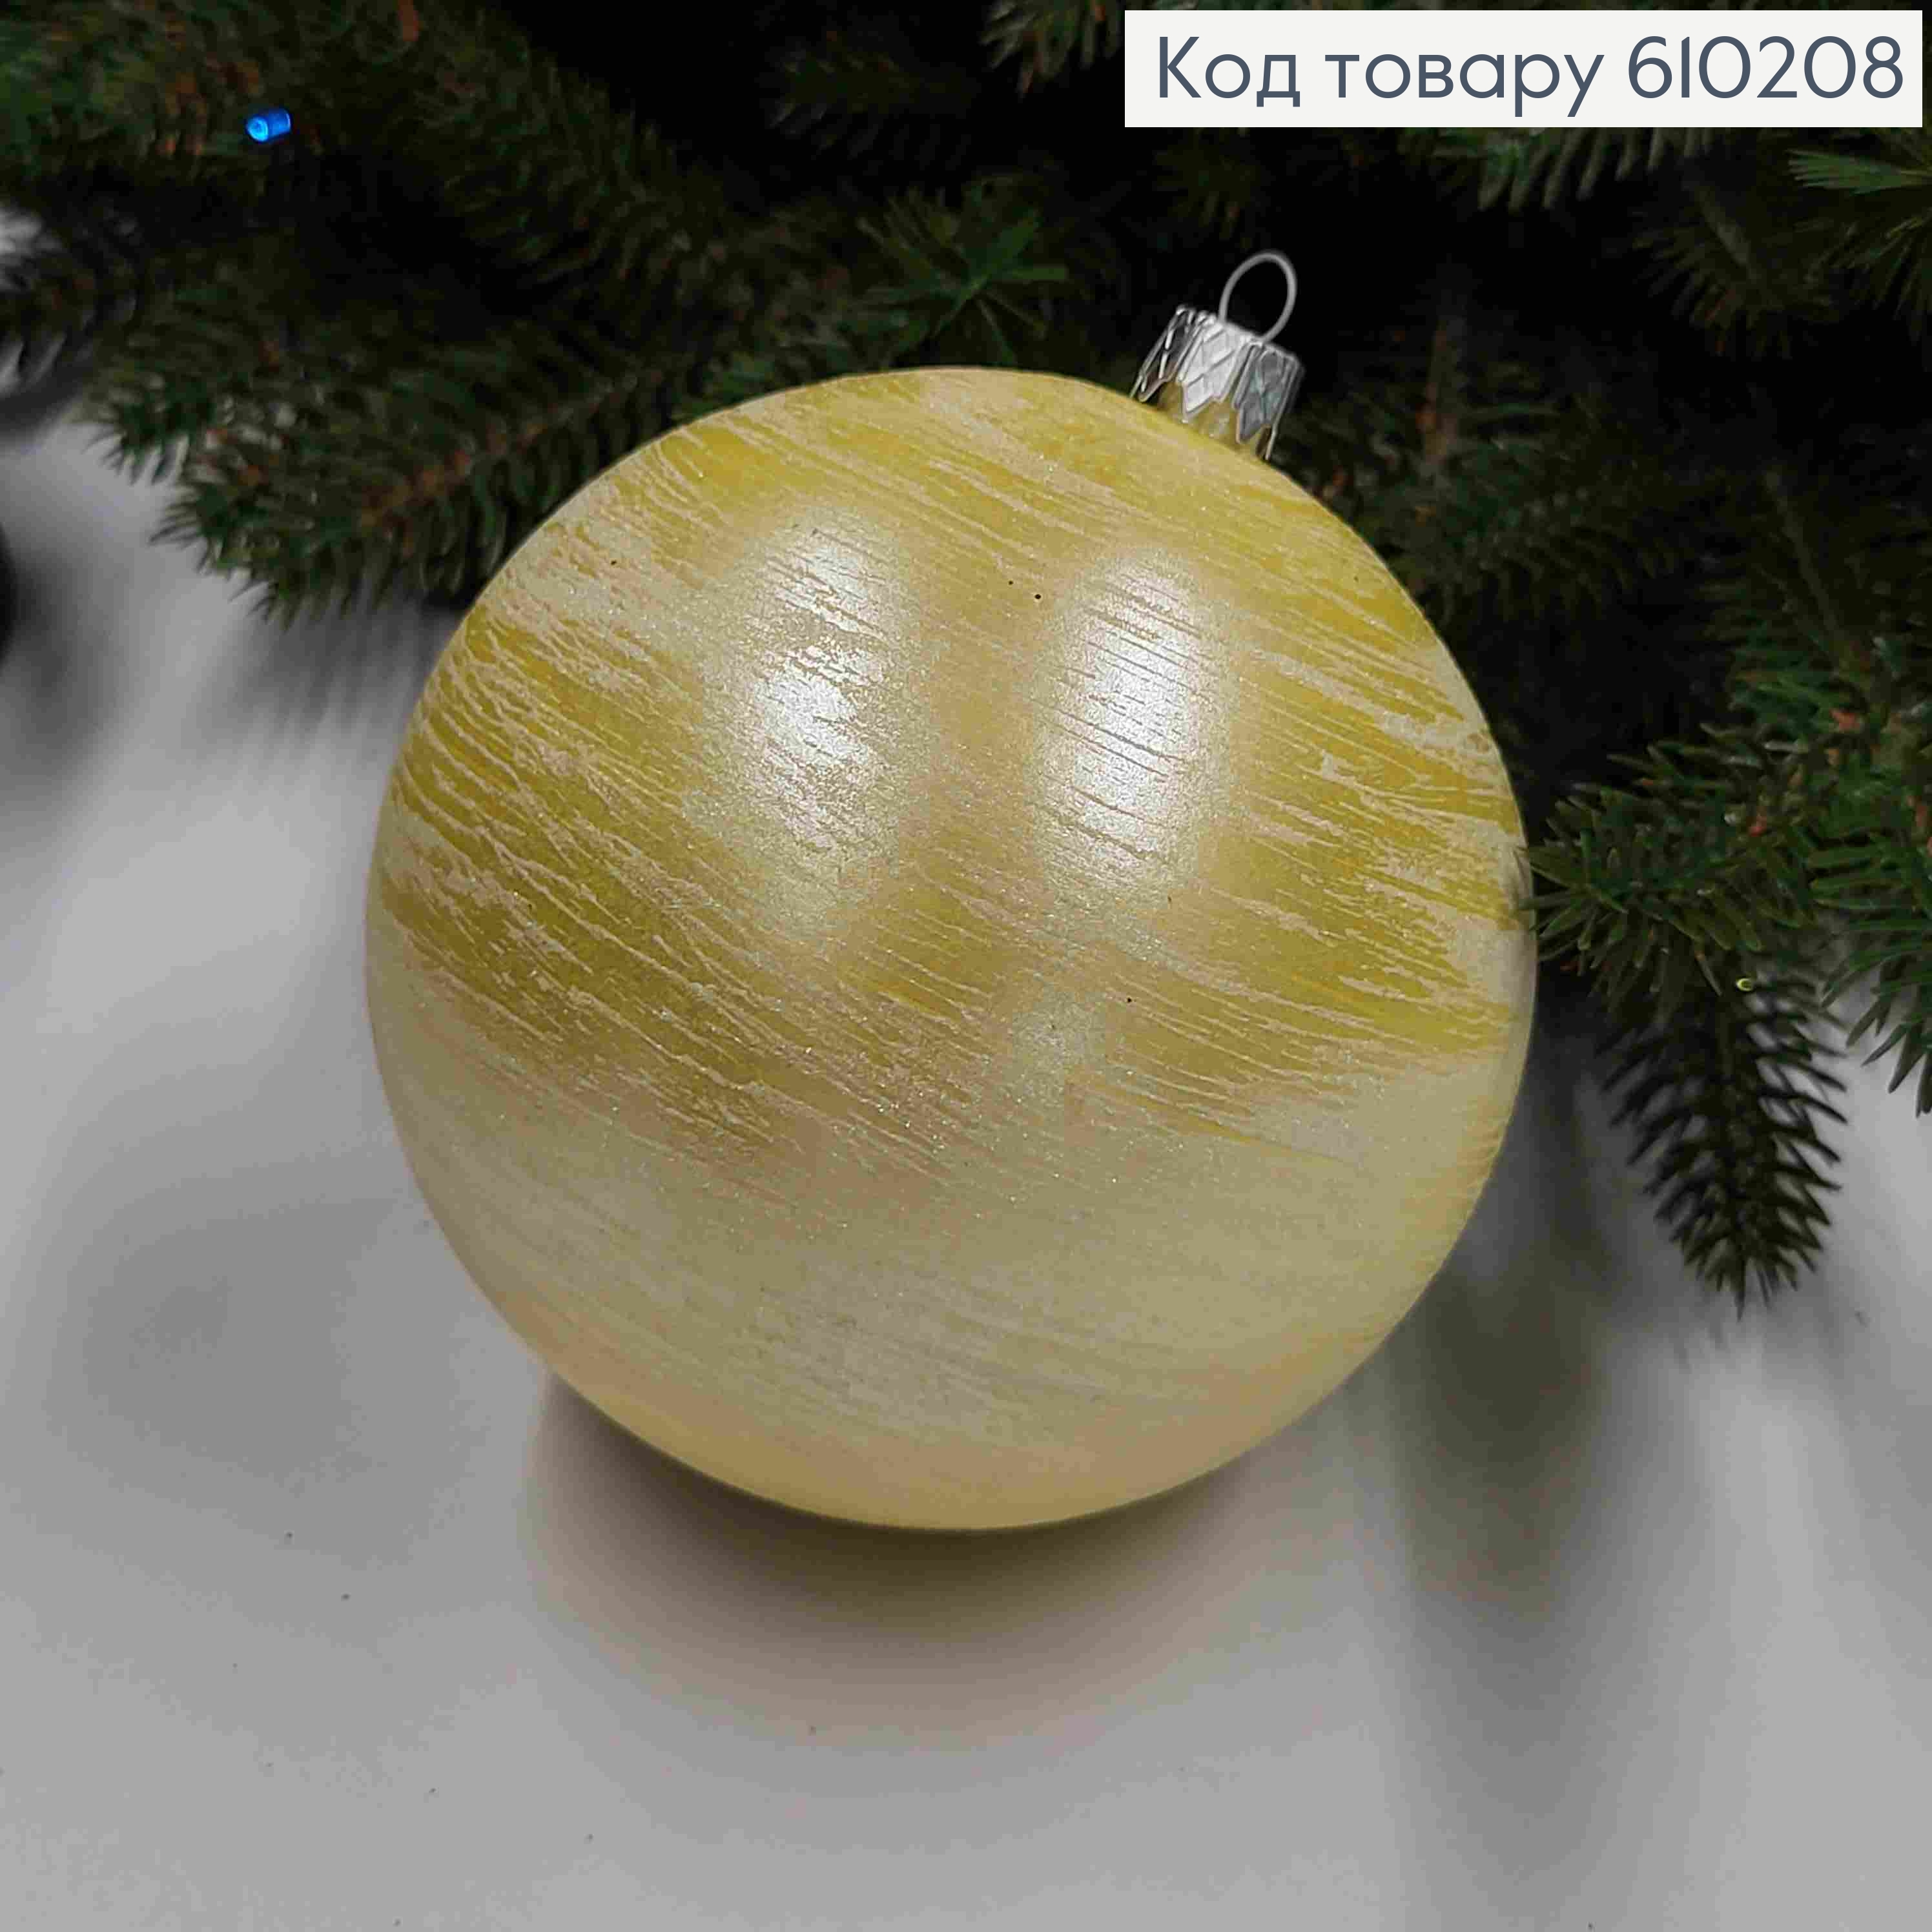 Іграшка куля 100мм ХУРДЕЛИЦЯ,  колір ЖОВТИЙ, Україна 610208 фото 2